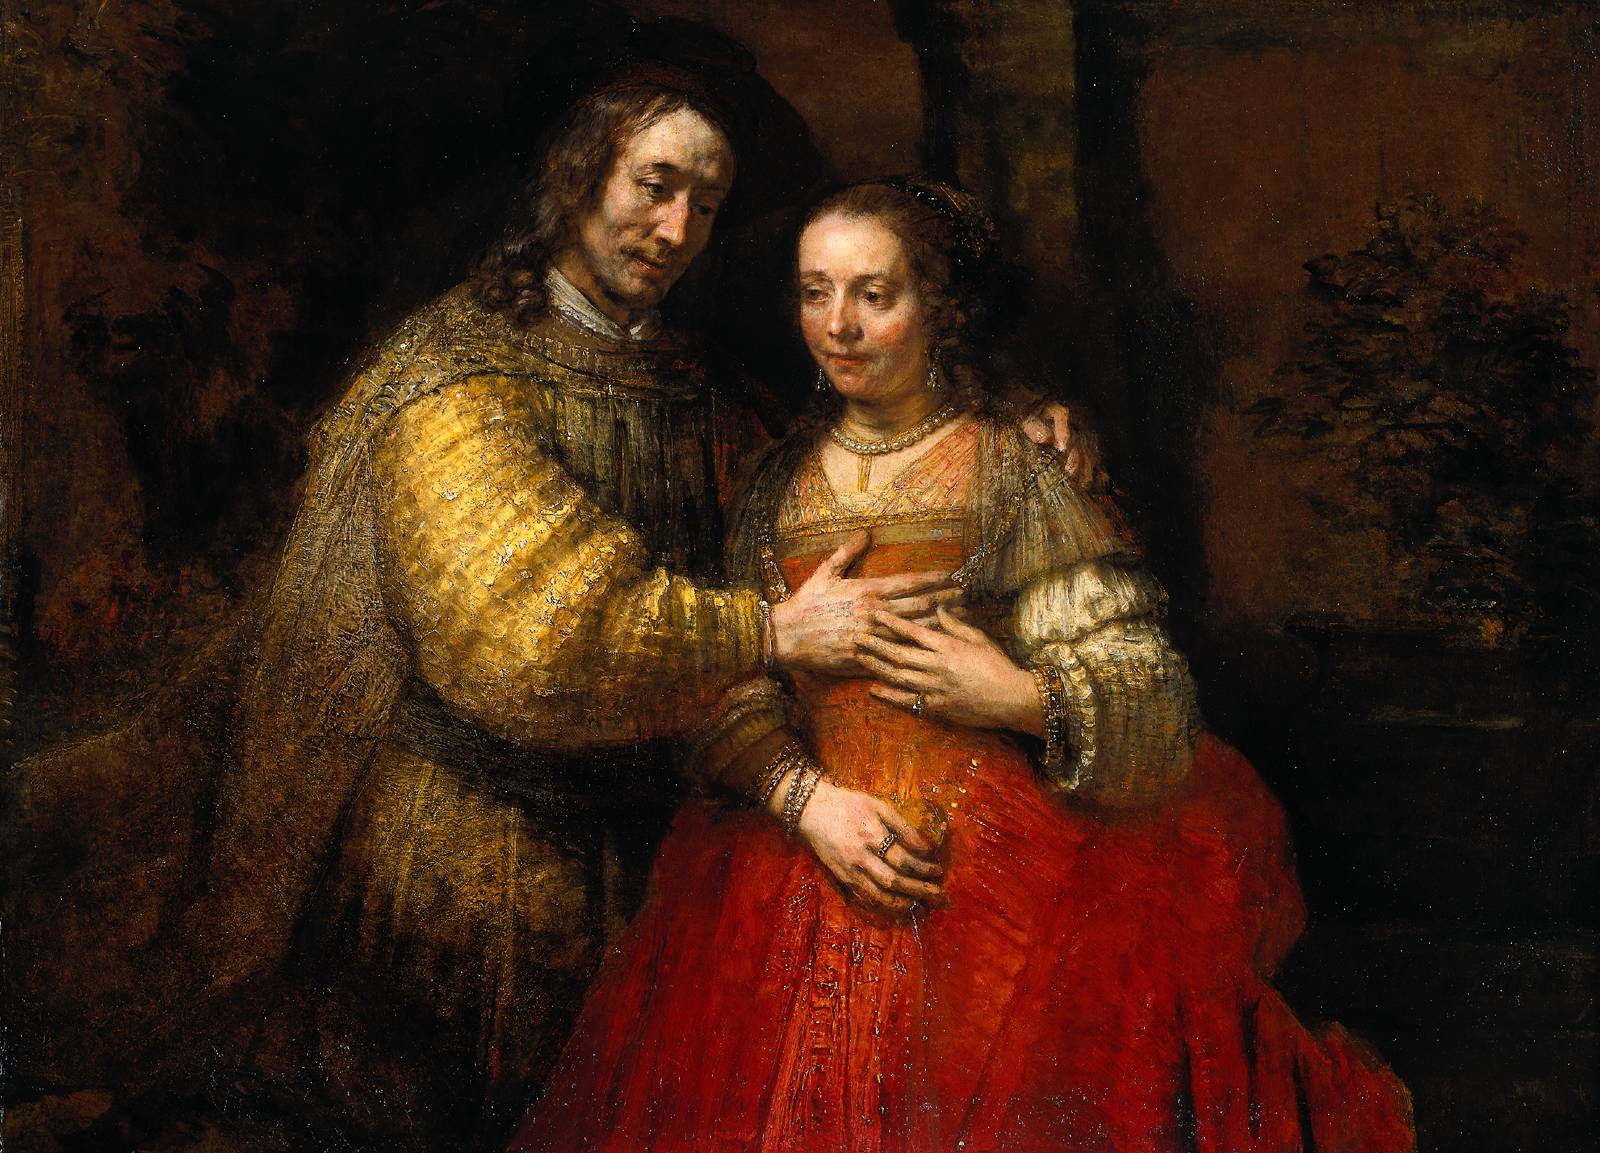 Рембрандт Харменс ван Рейн. "Еврейская невеста". 1667.